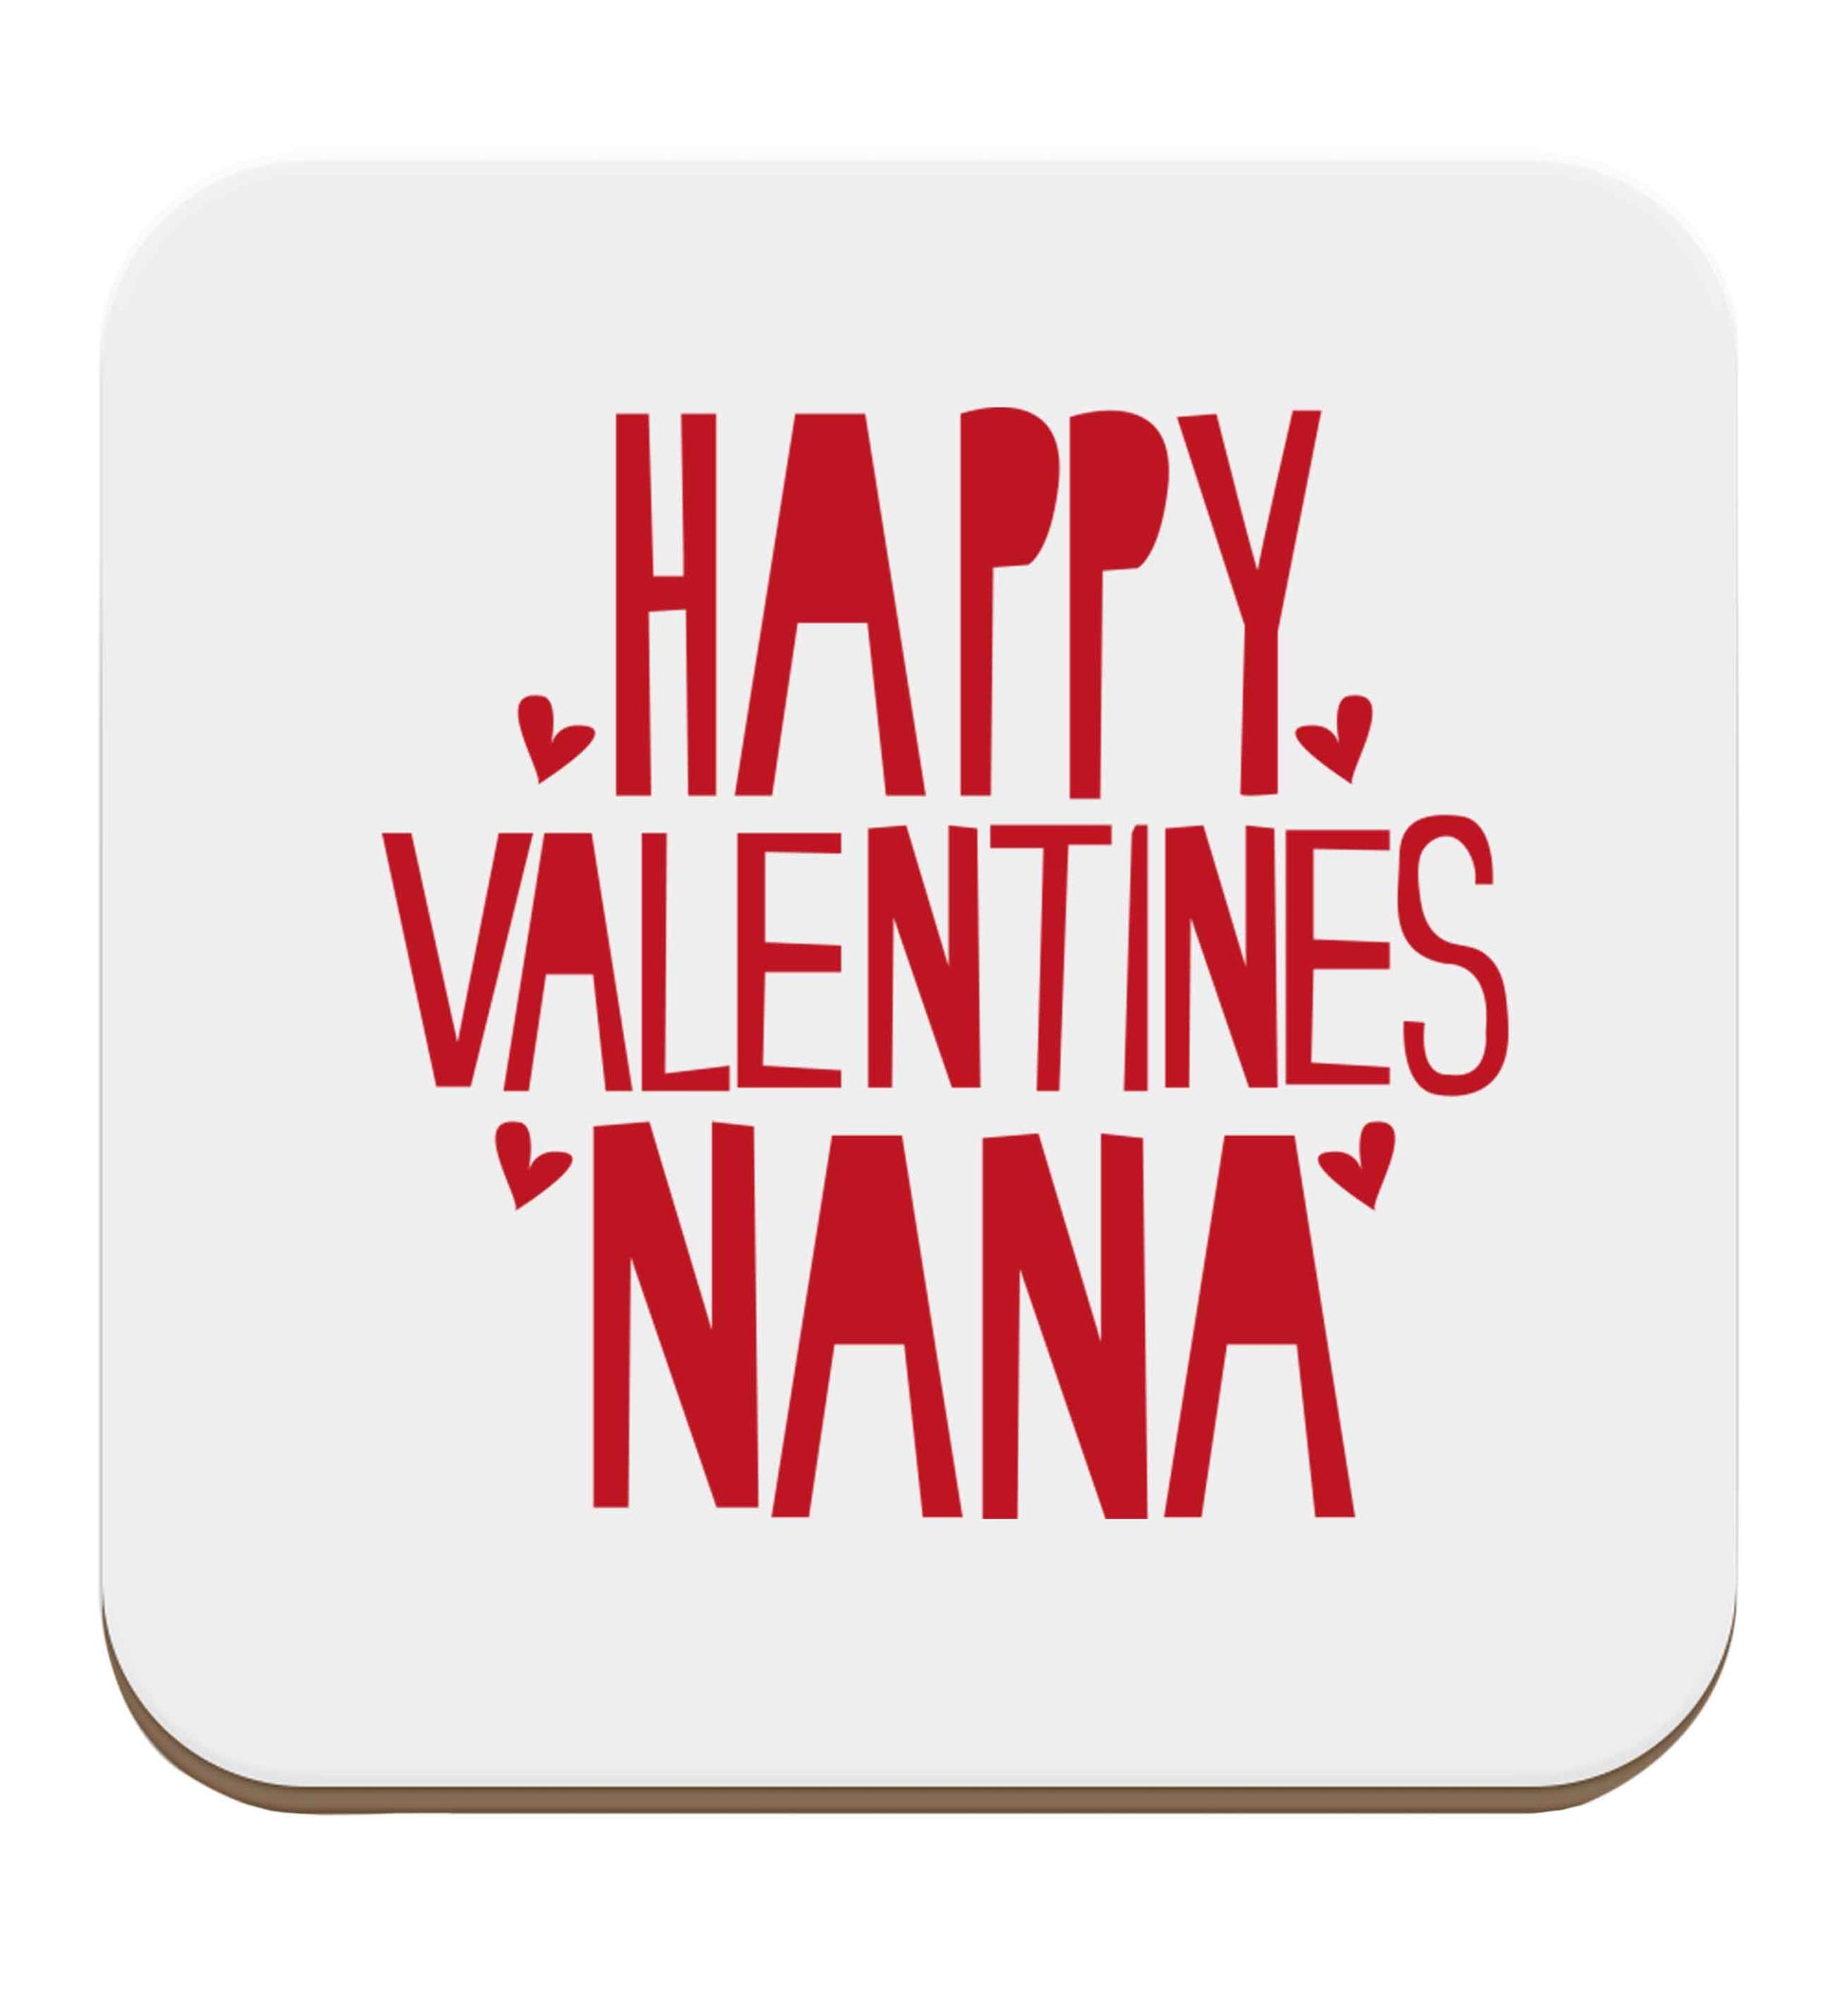 Happy valentines nana set of four coasters